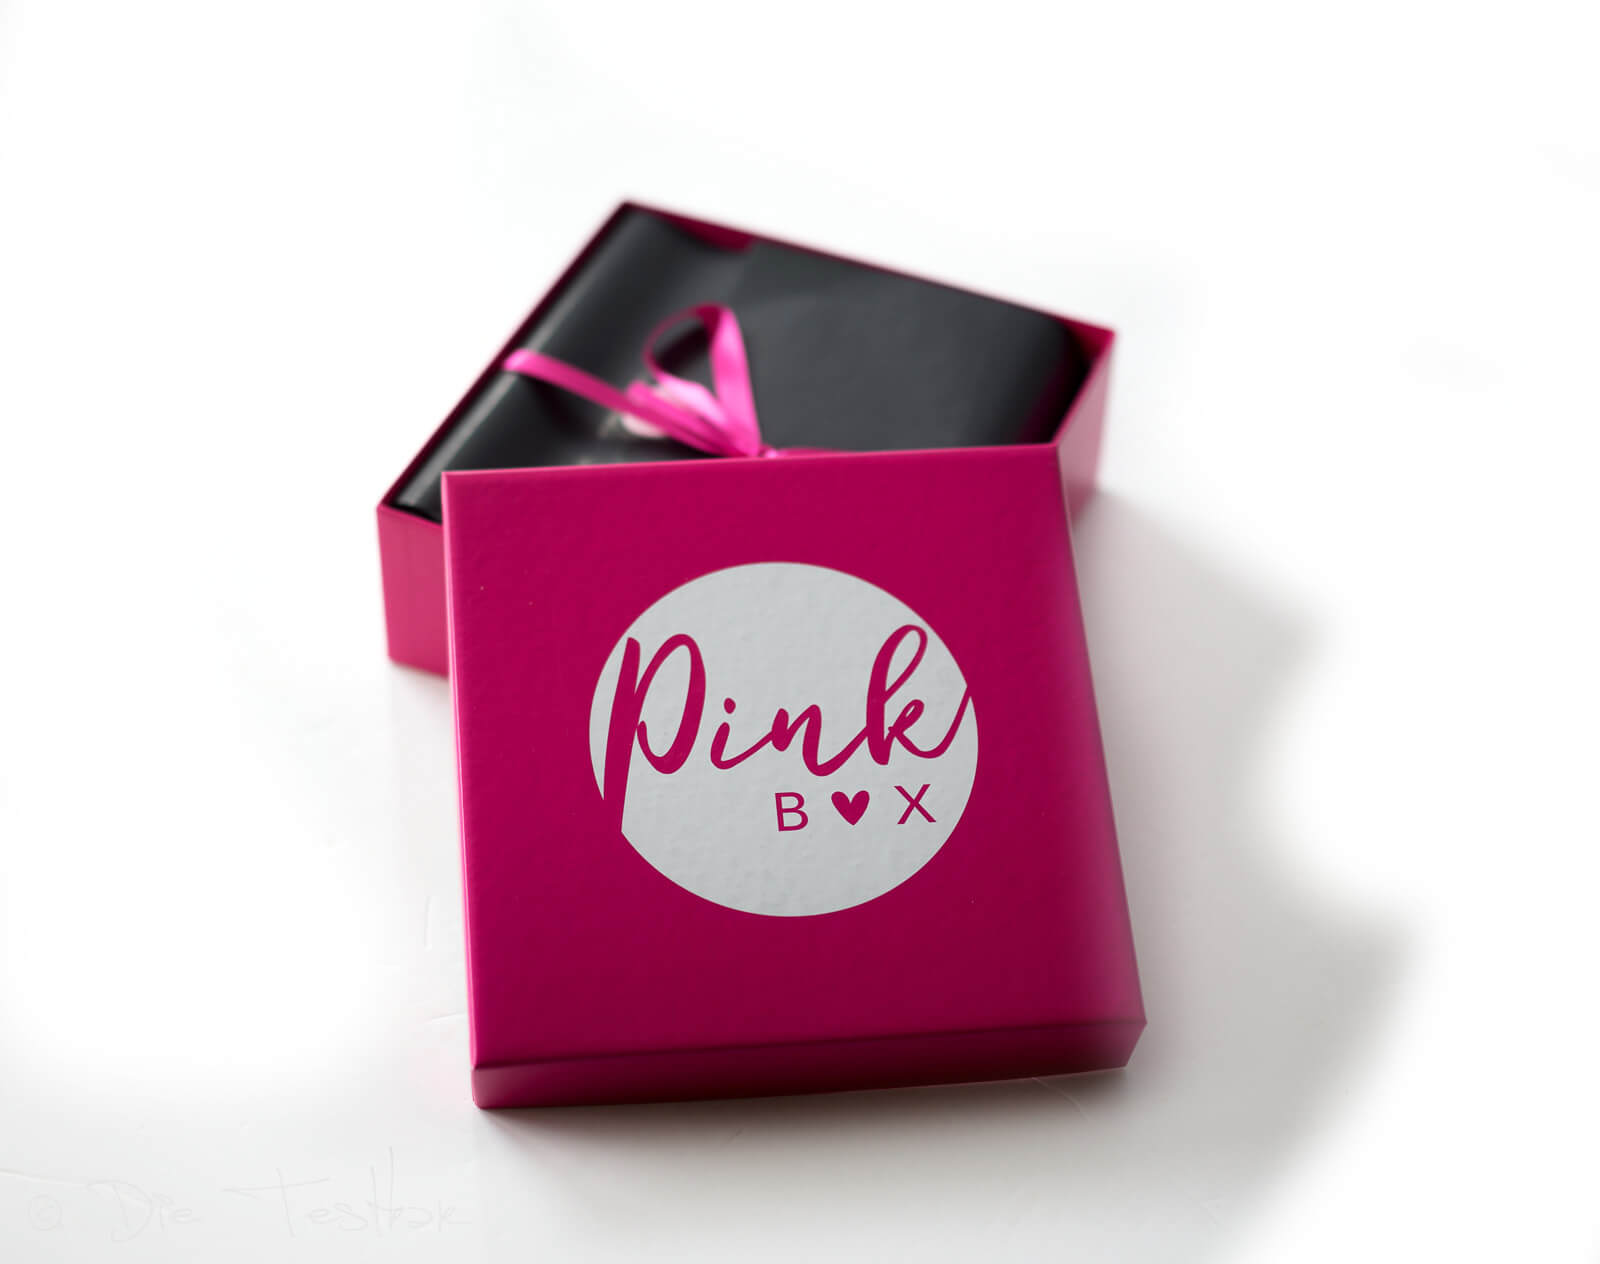 DIE PINK BOX im Oktober 2019 – Pink Box #GRWM 2019